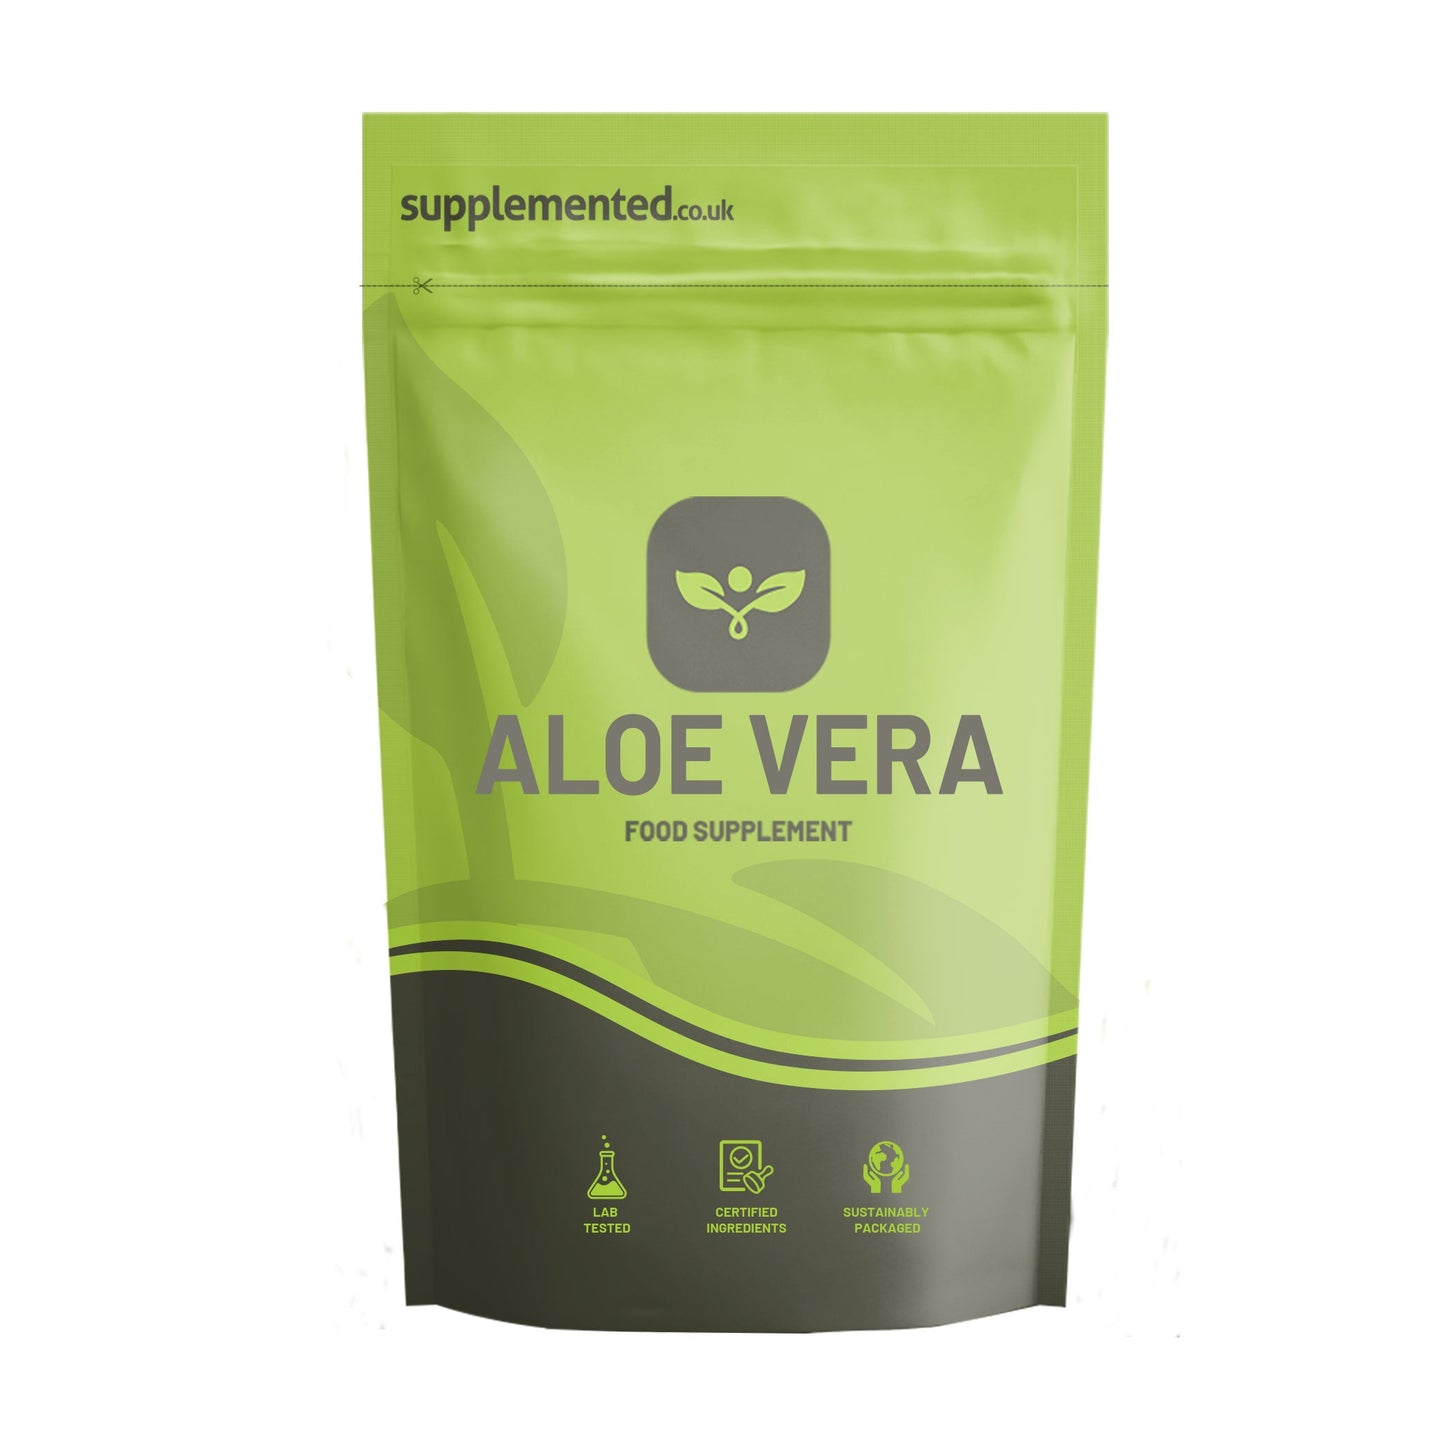 Aloe Vera Extract 6000mg Tablets